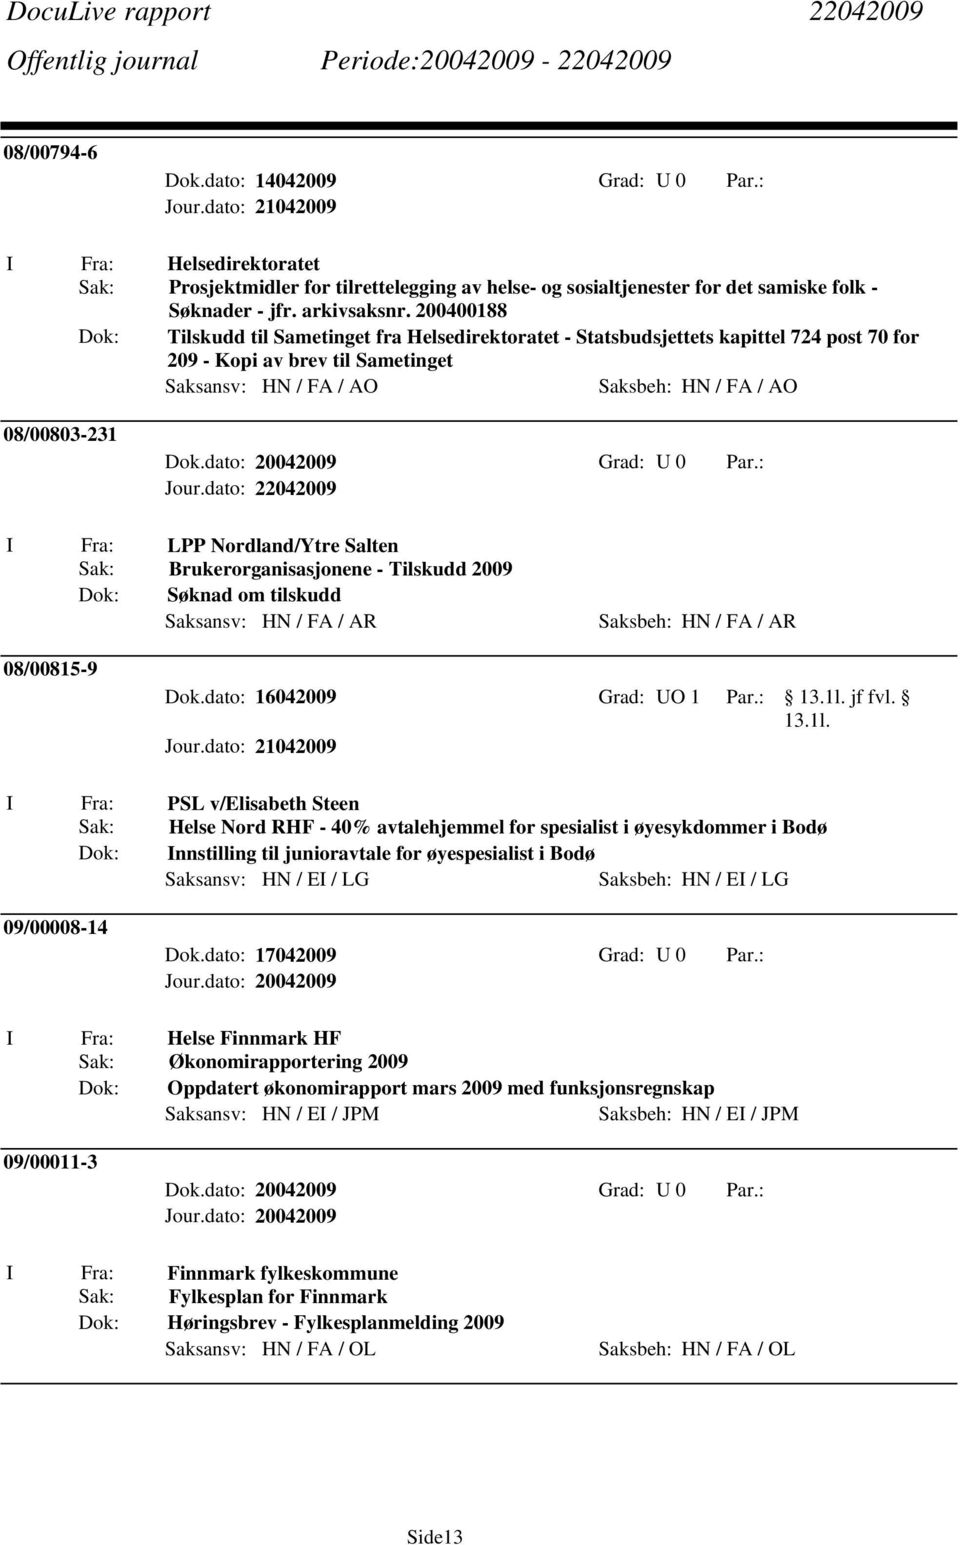 LPP Nordland/Ytre Salten Sak: Brukerorganisasjonene - Tilskudd 2009 Søknad om tilskudd Saksansv: HN / FA / AR Saksbeh: HN / FA / AR 08/00815-9 Dok.dato: 16042009 Grad: UO 1 Par.: 13.1l.